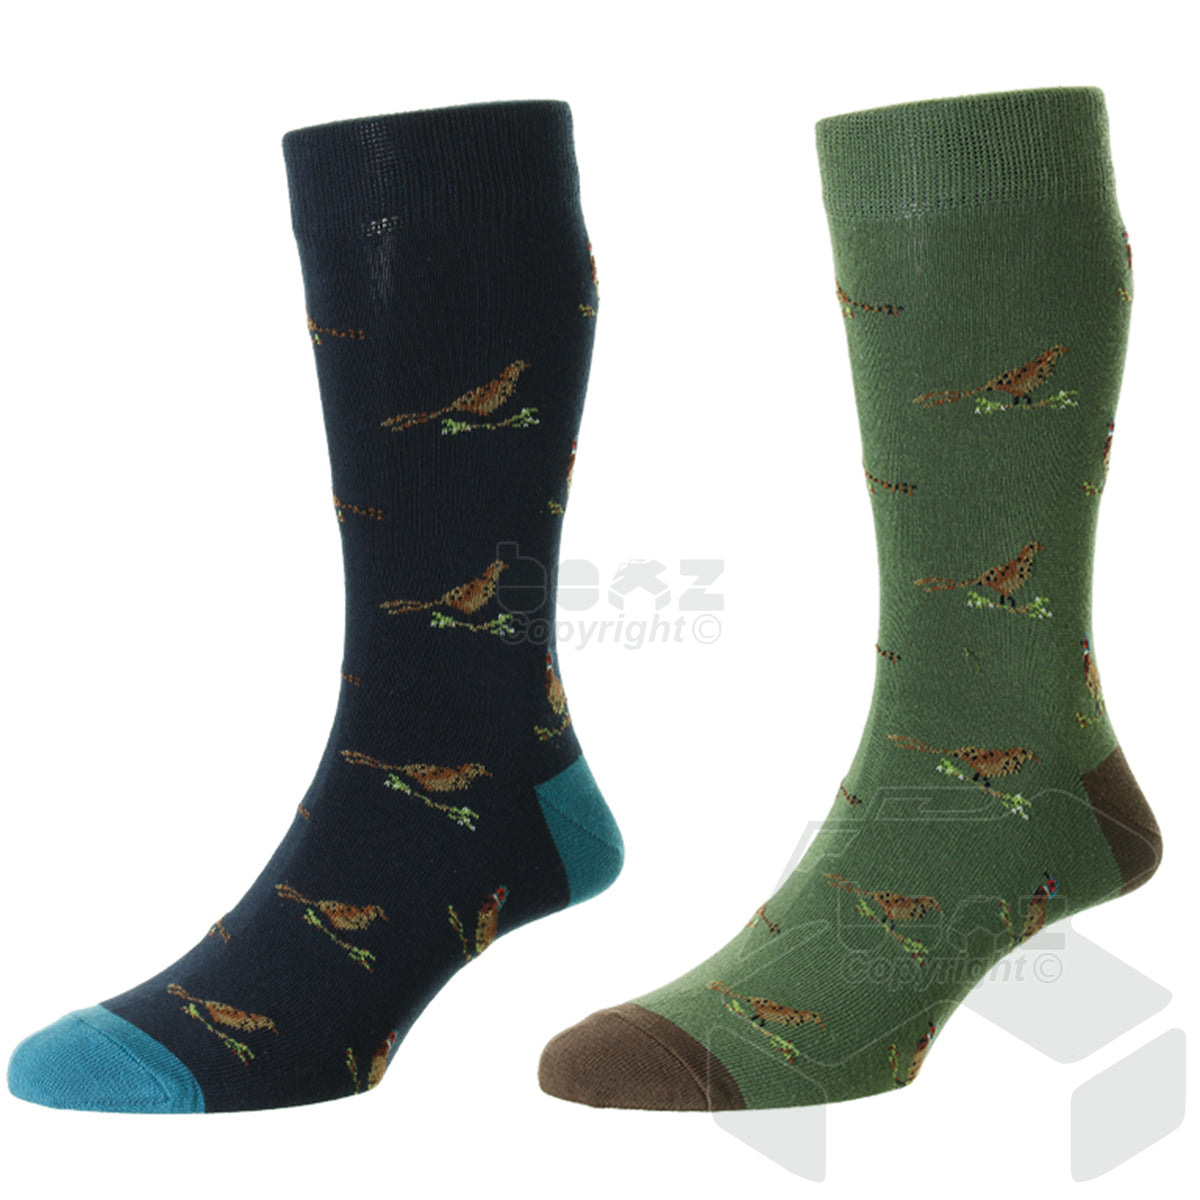 Bisley Pheasant Socks